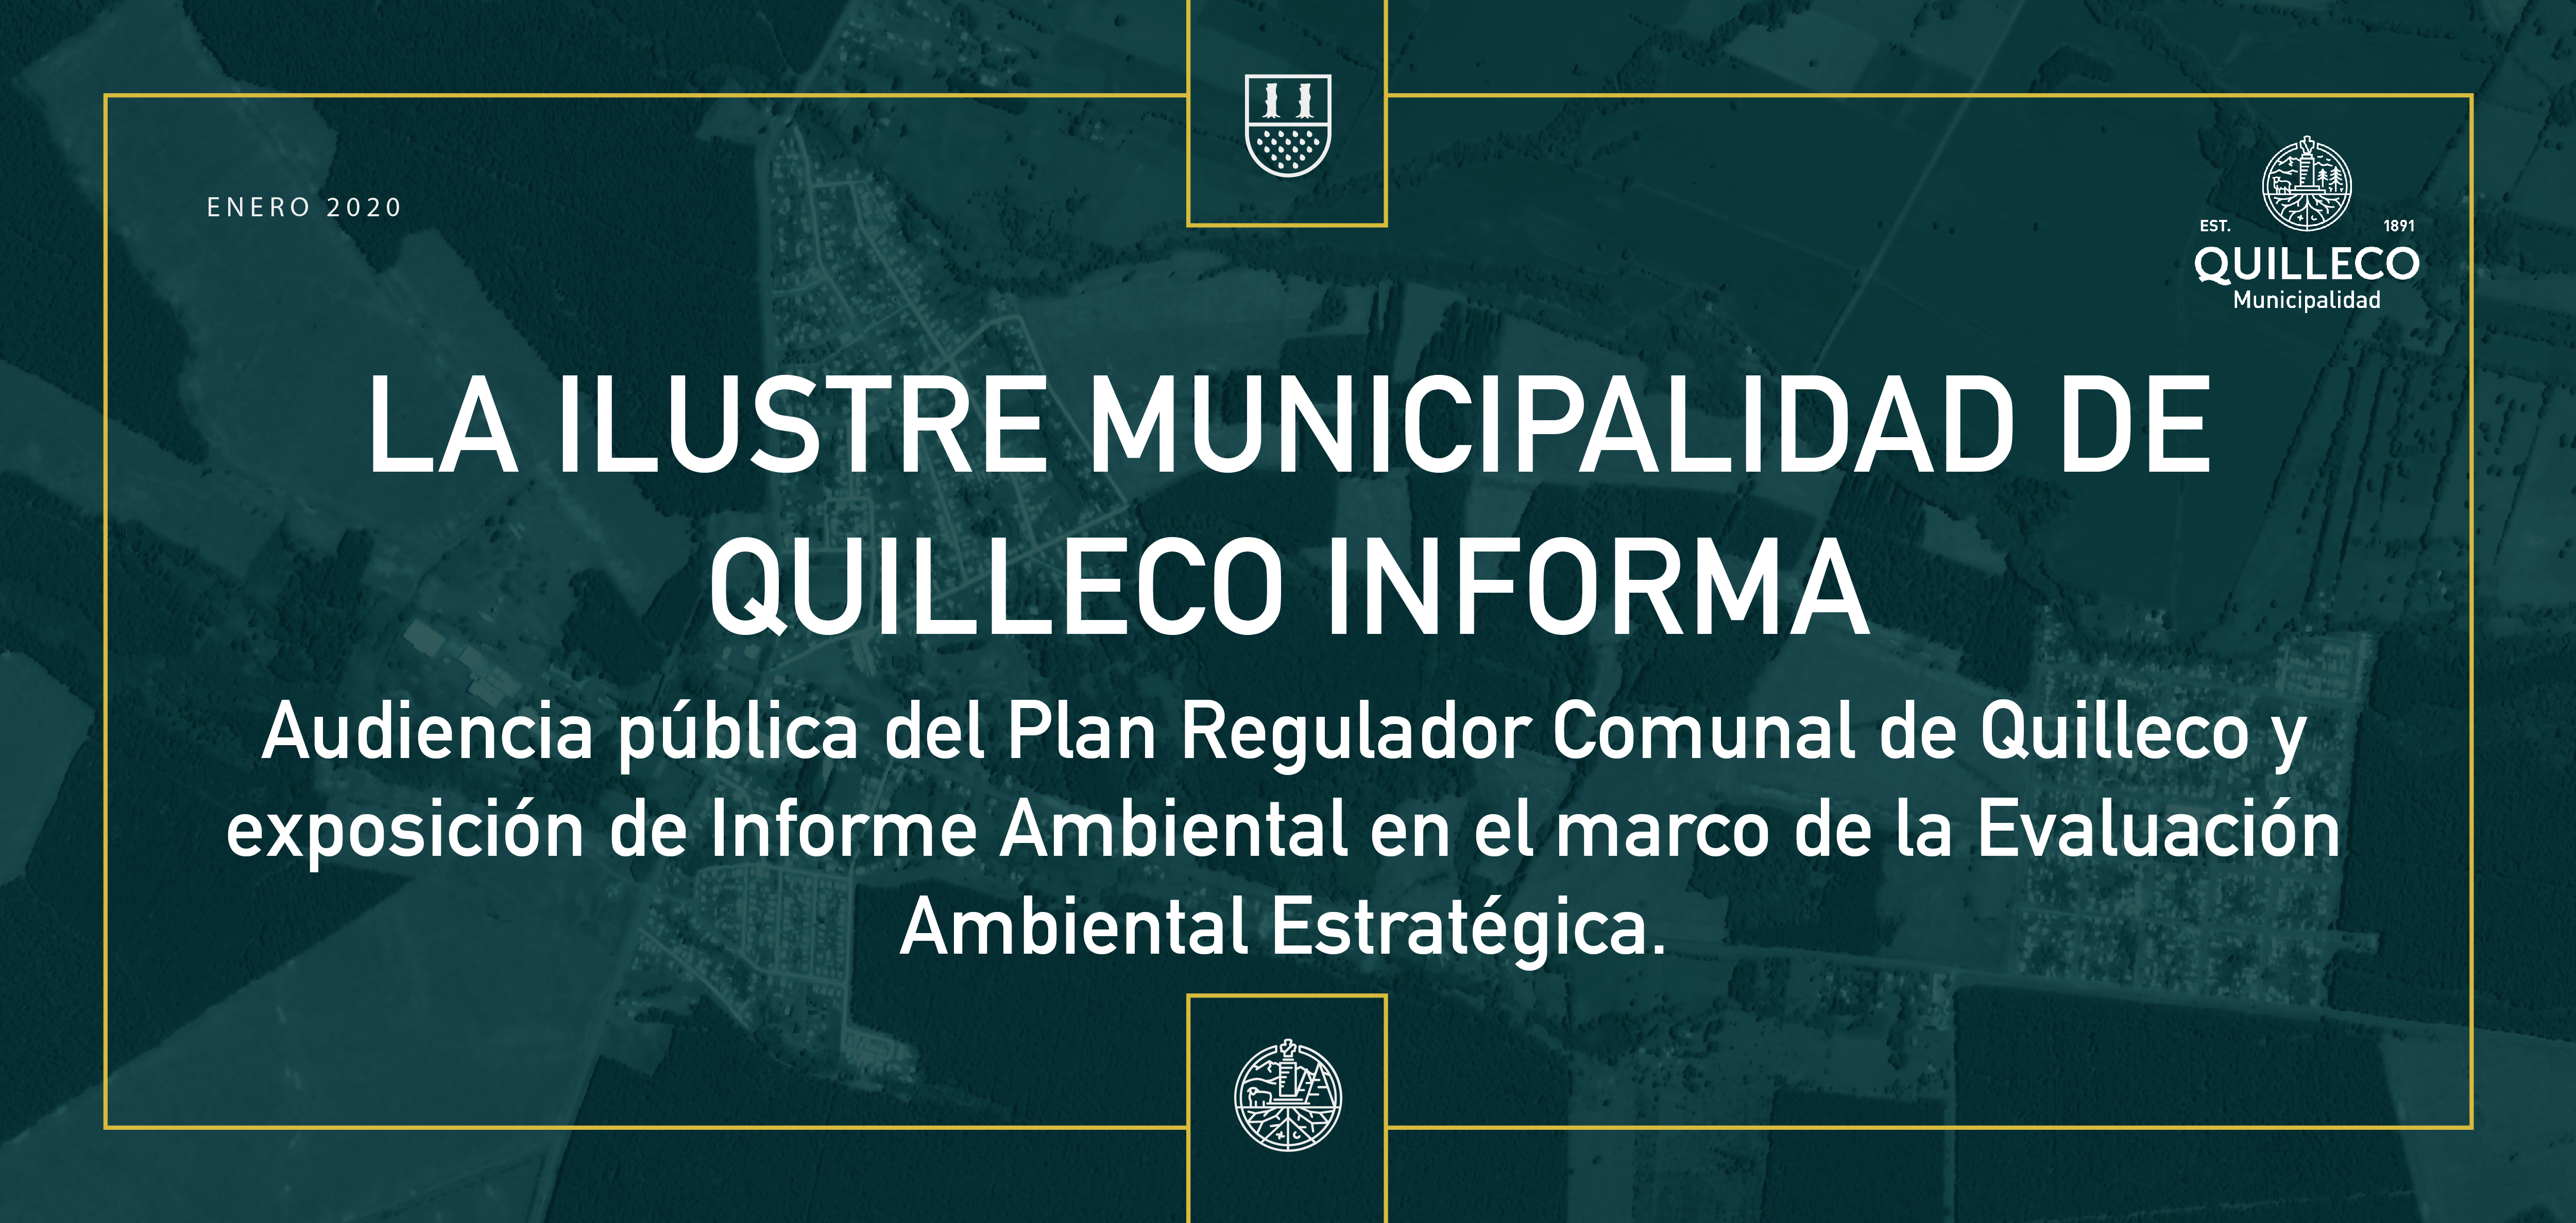 La Ilustre Municipalidad de Quilleco informa sobre audiencia pública del Plan Regulador Comunal de Quilleco y exposición de Informe Ambiental en el marco de la Evaluación Ambiental Estratégica.